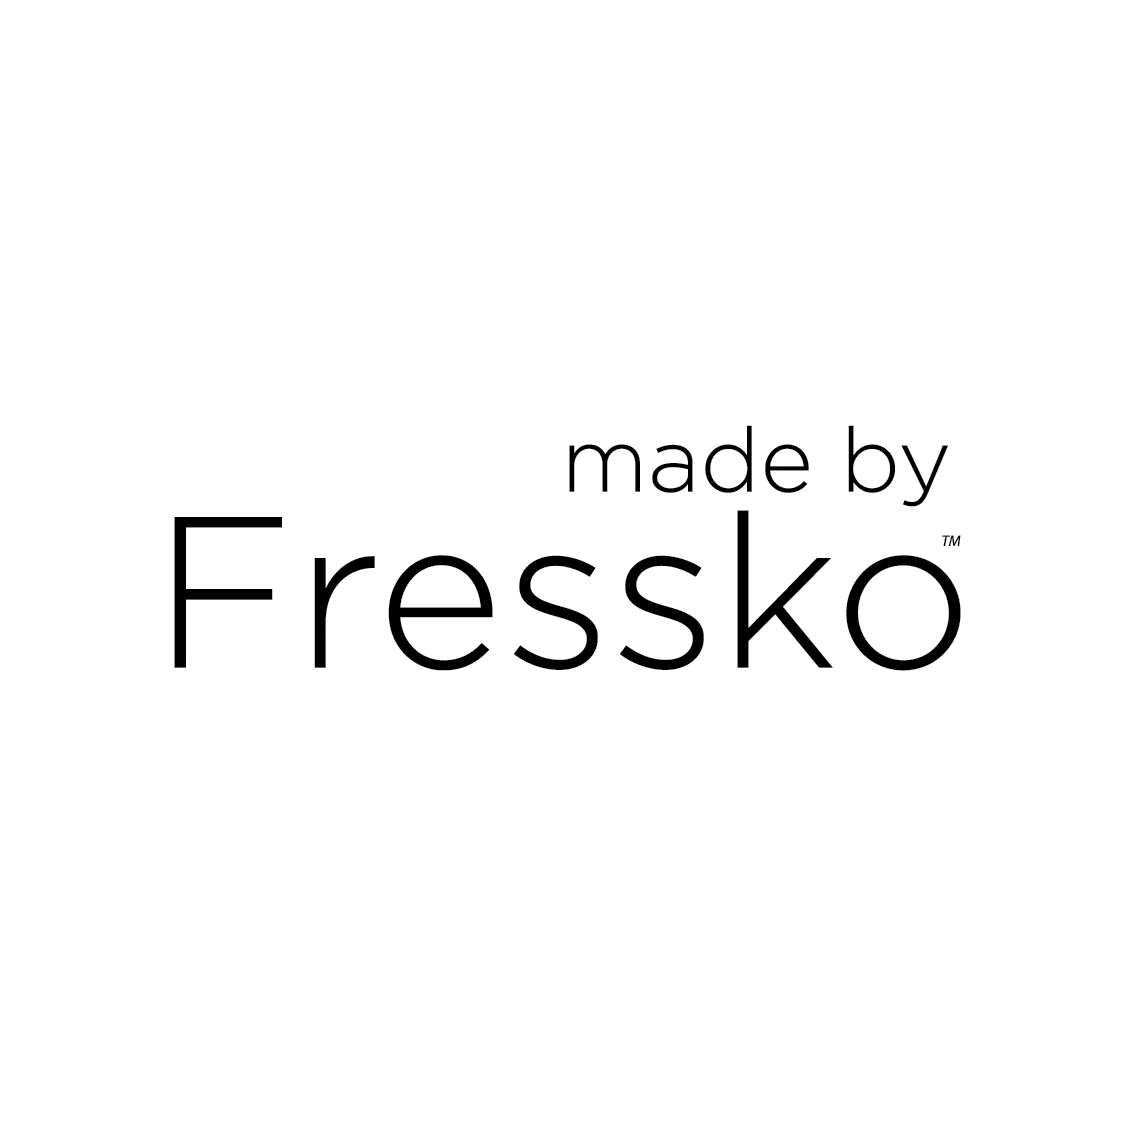 Fressko